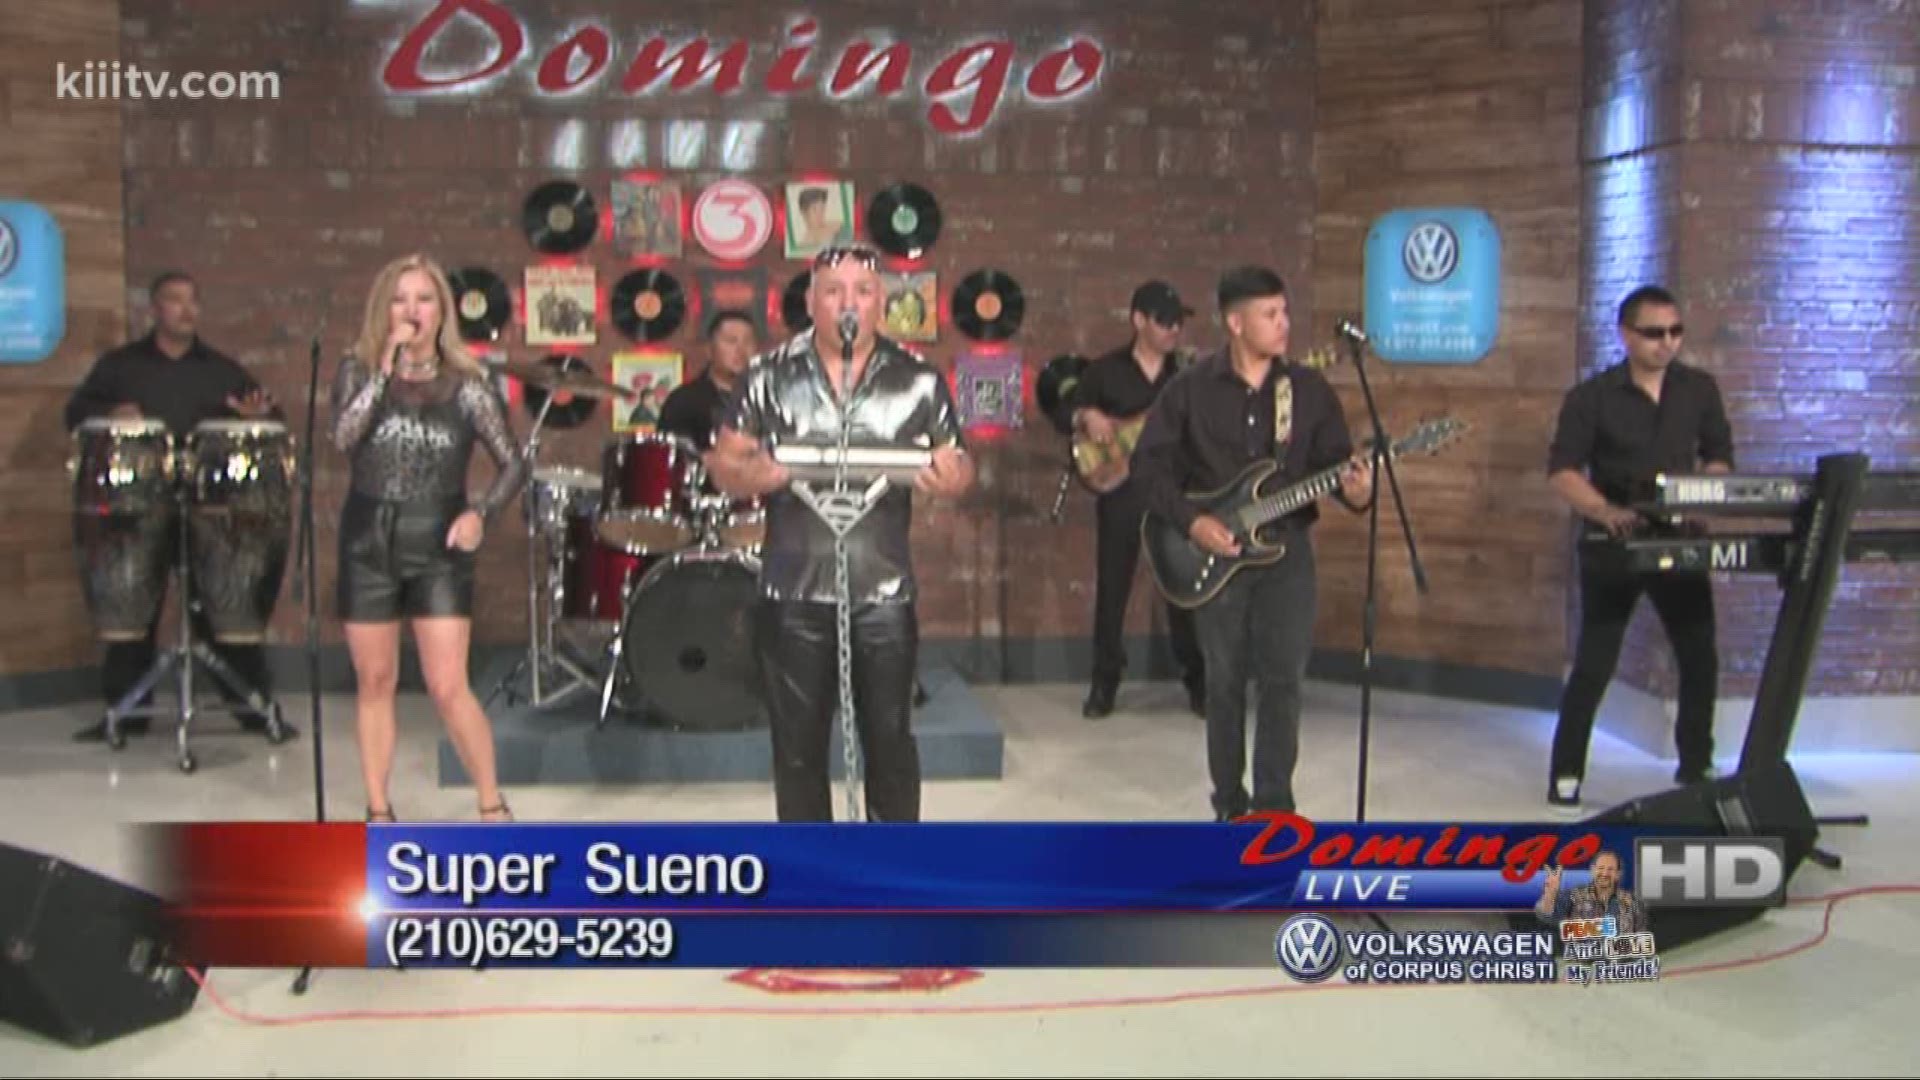 Super Sueno performing "Estupido" on Domingo Live.